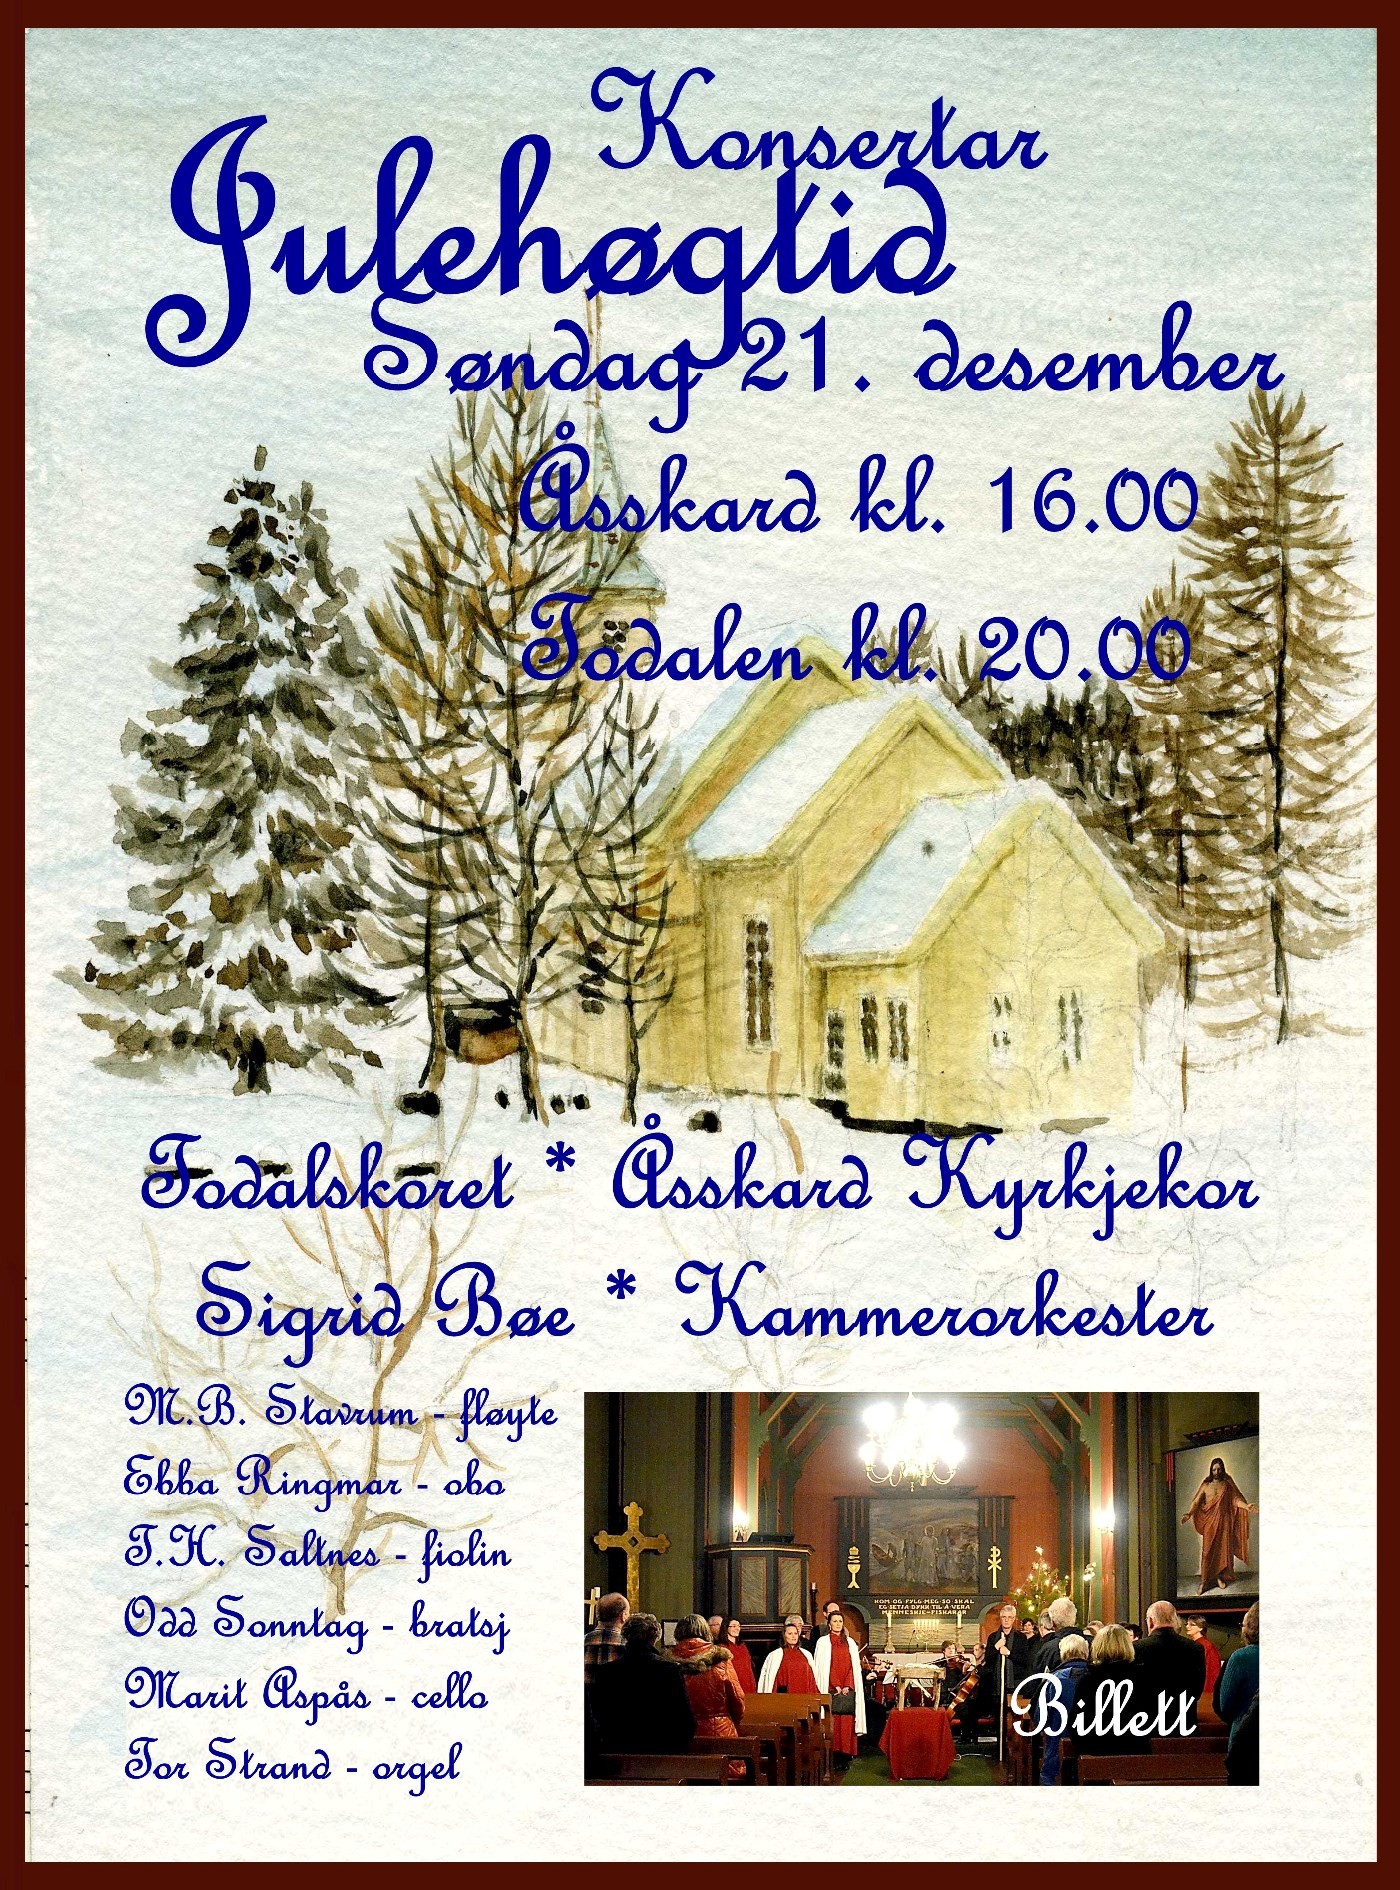 Julehøgtid PLAKAT Konsertar 21.12.14